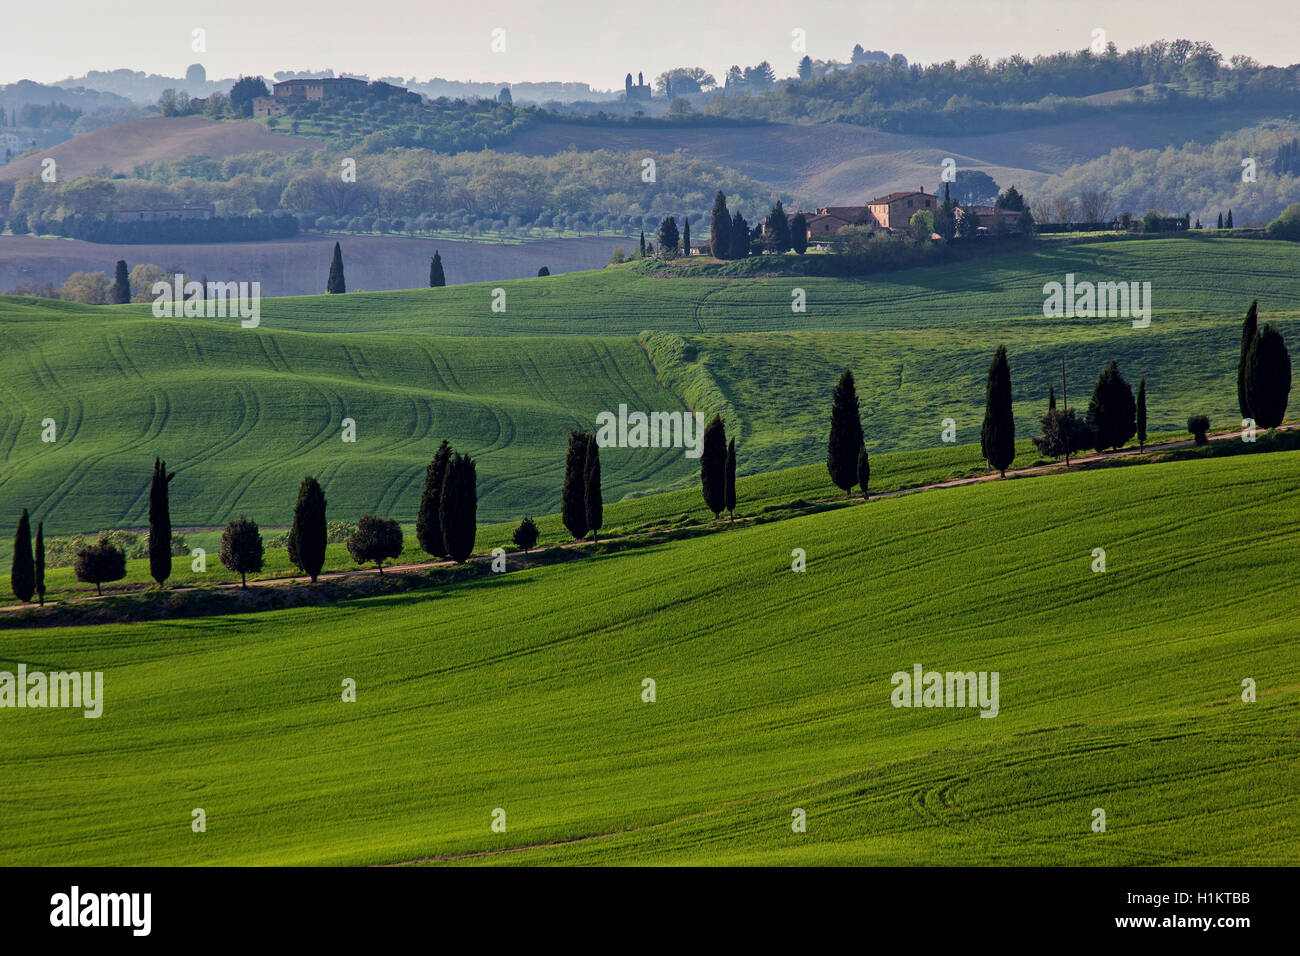 Hügelige Landschaft mit Weizenfeldern und Zypressen, Asciano, Crete Senesi, Provinz Siena, Toskana, Italien Stockfoto